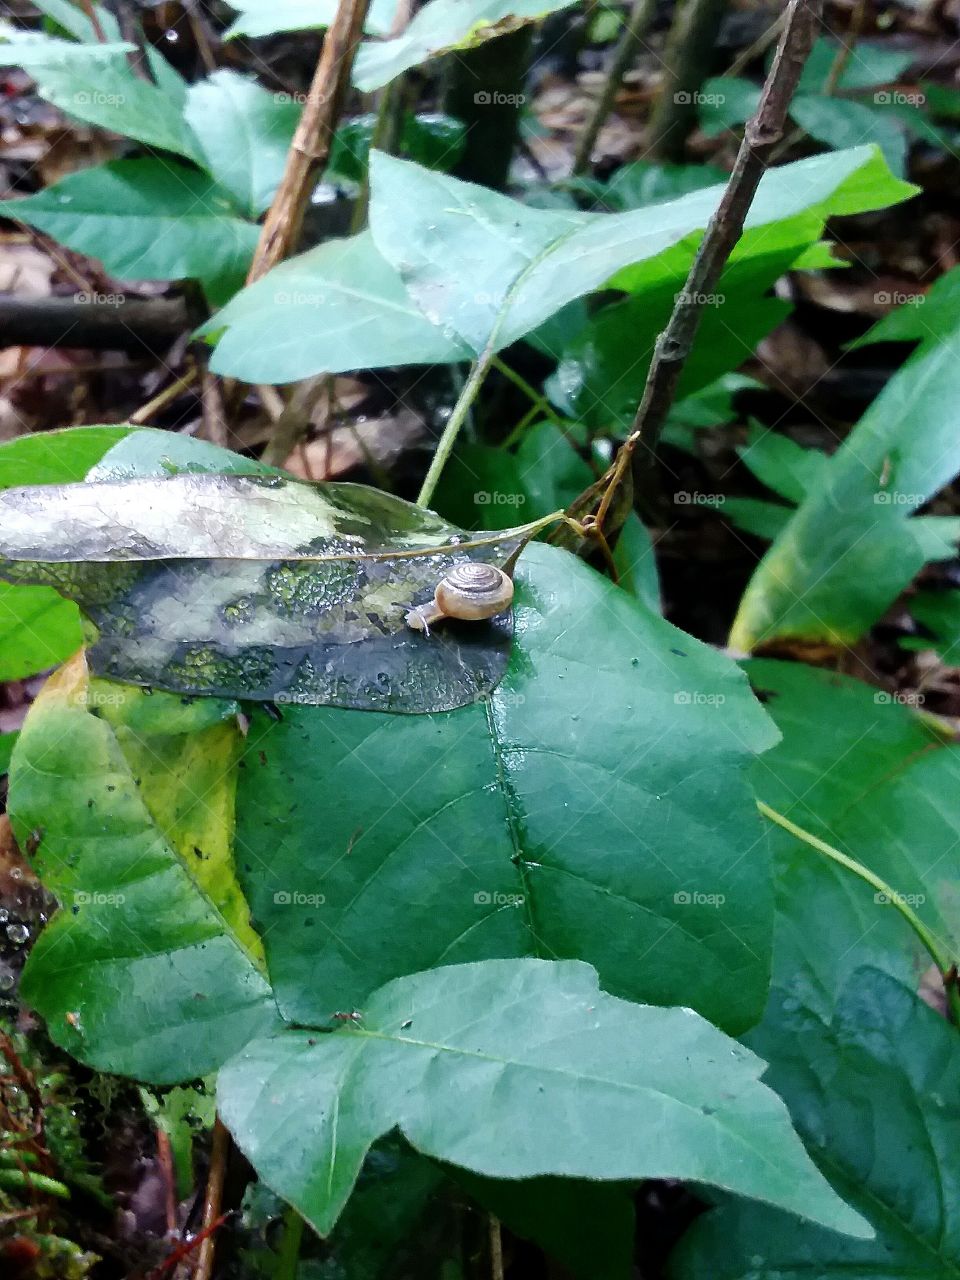 small little snail